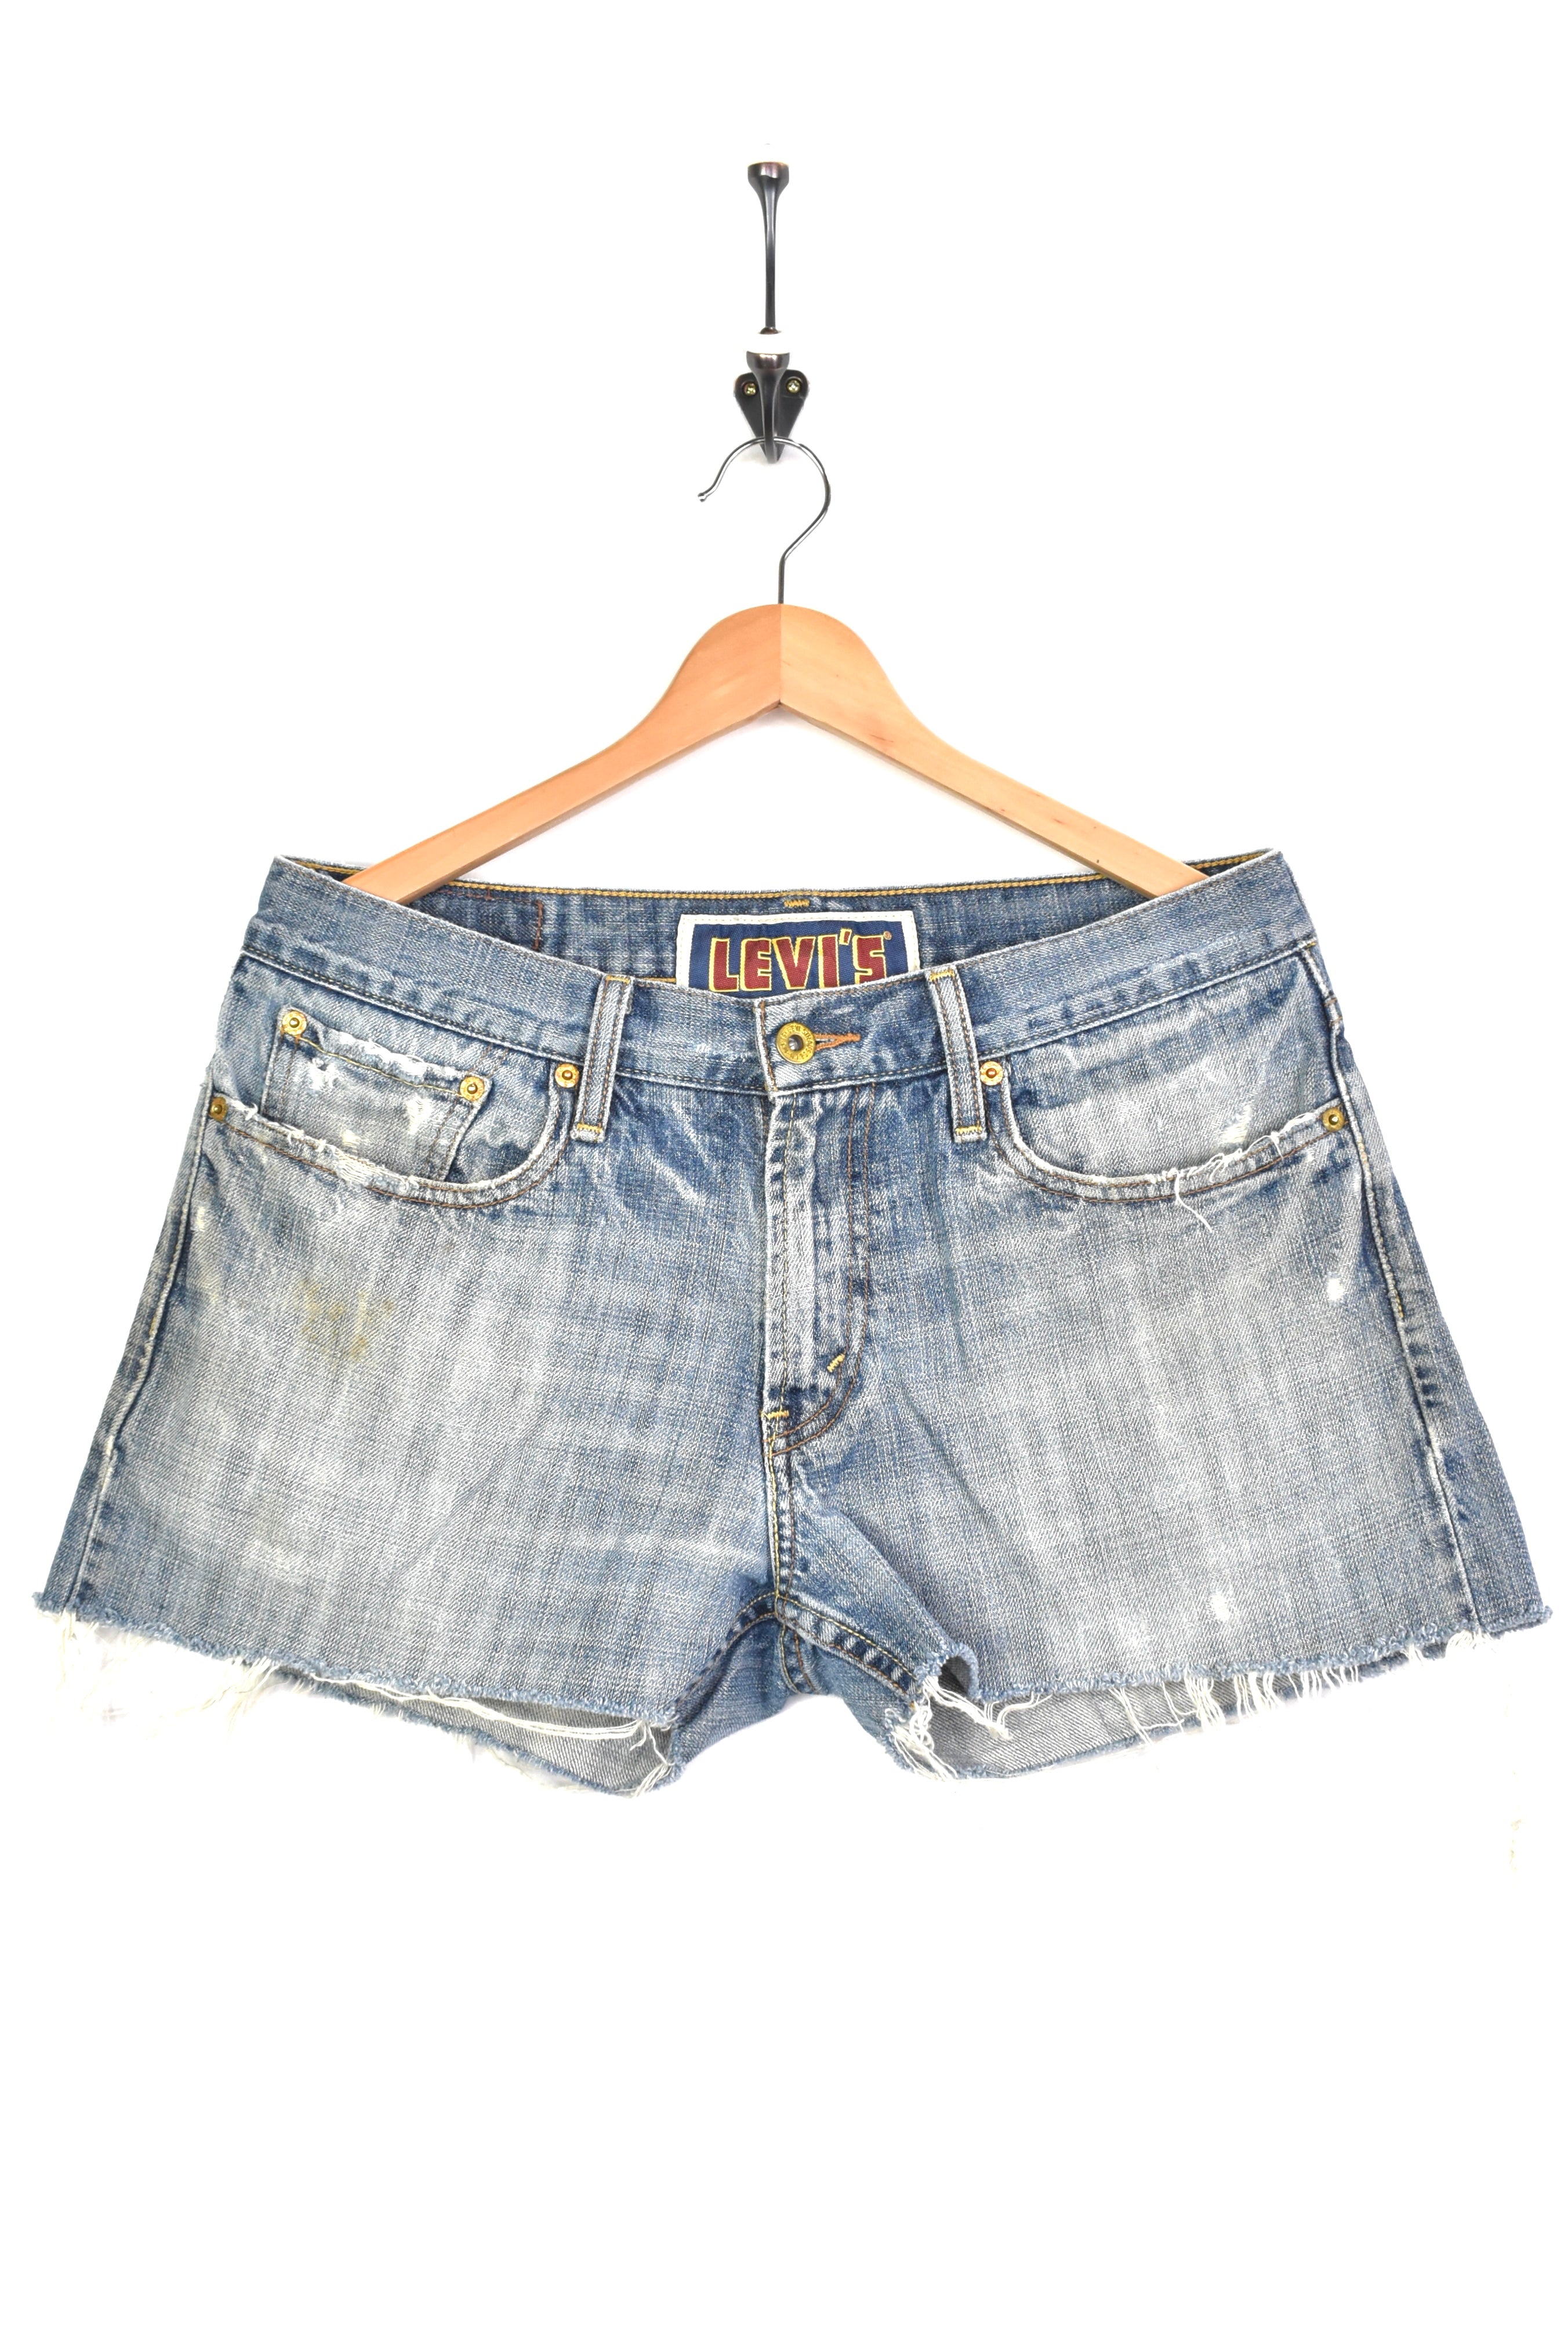 Women's vintage Levi's shorts, rework denim jeans - blue, W33" LEVIS